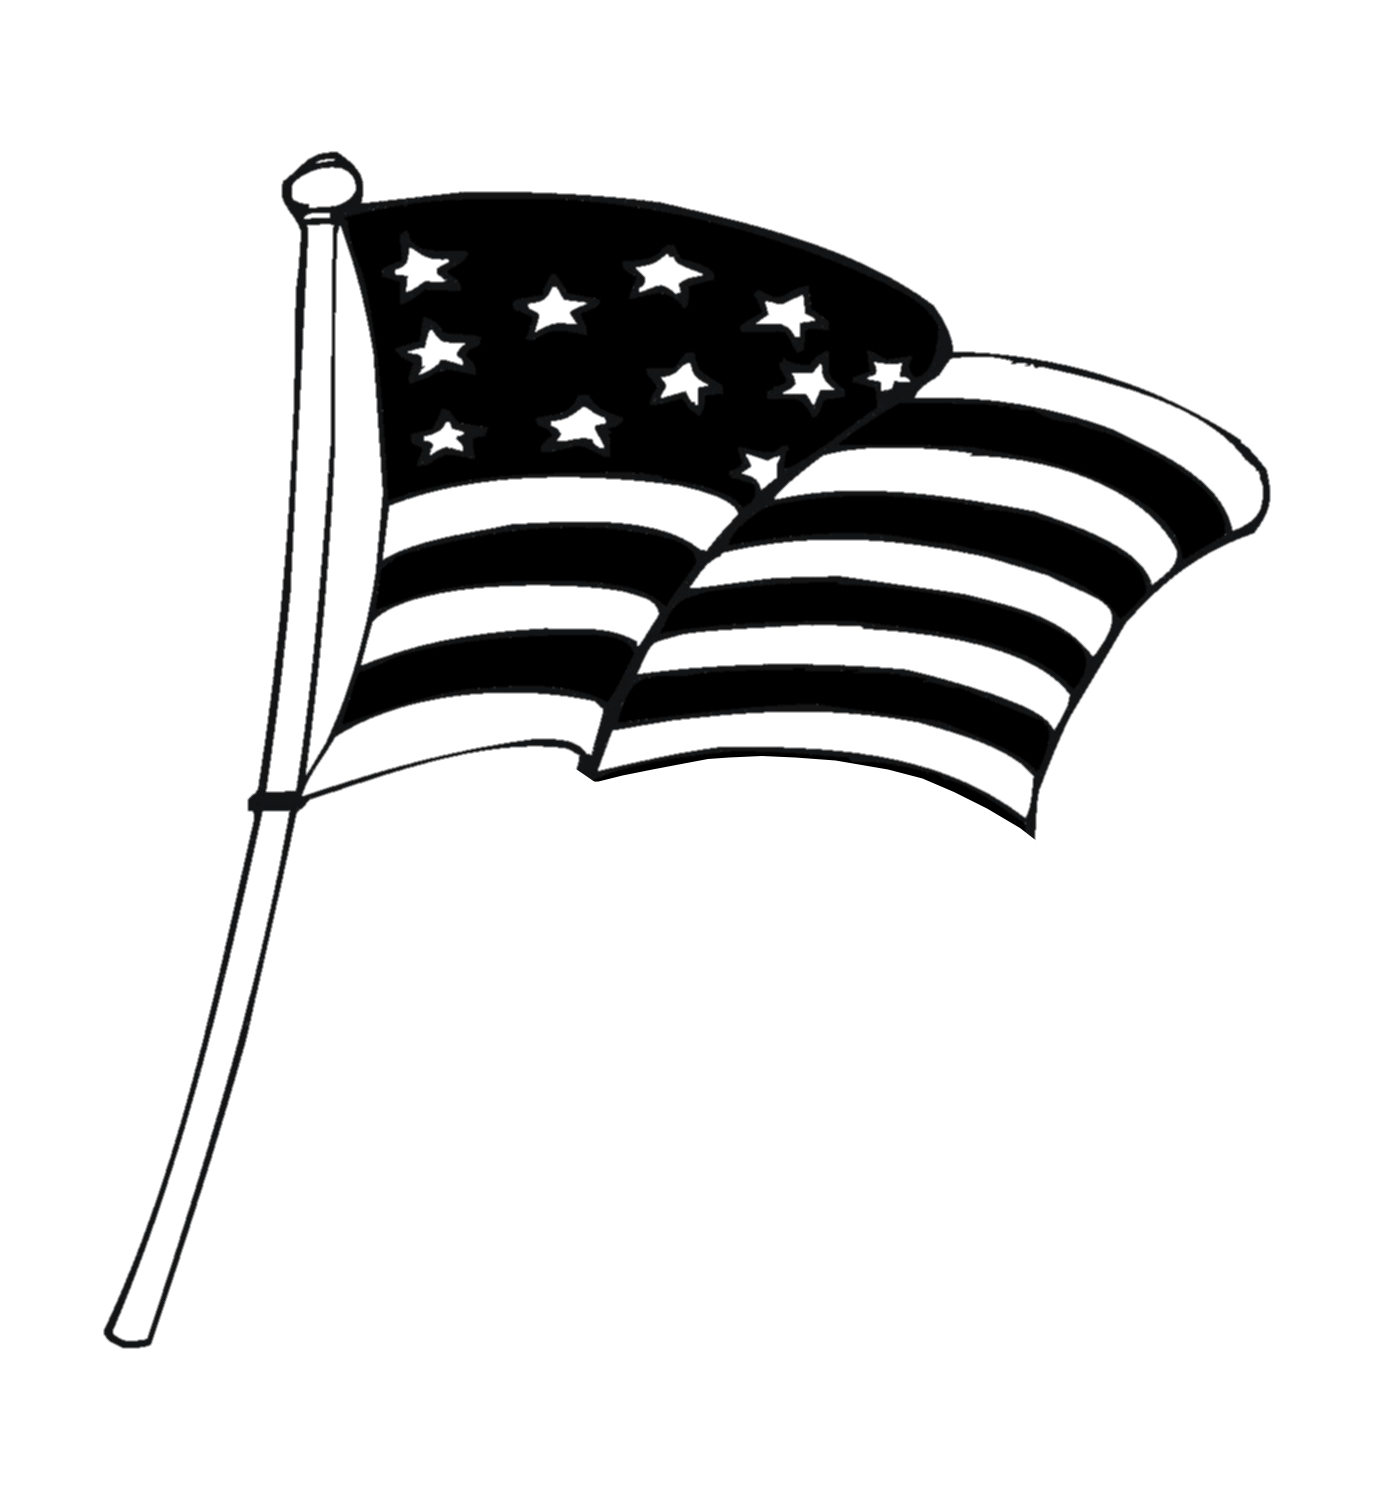 Us Flag American Flag Usa Graphics Clipart